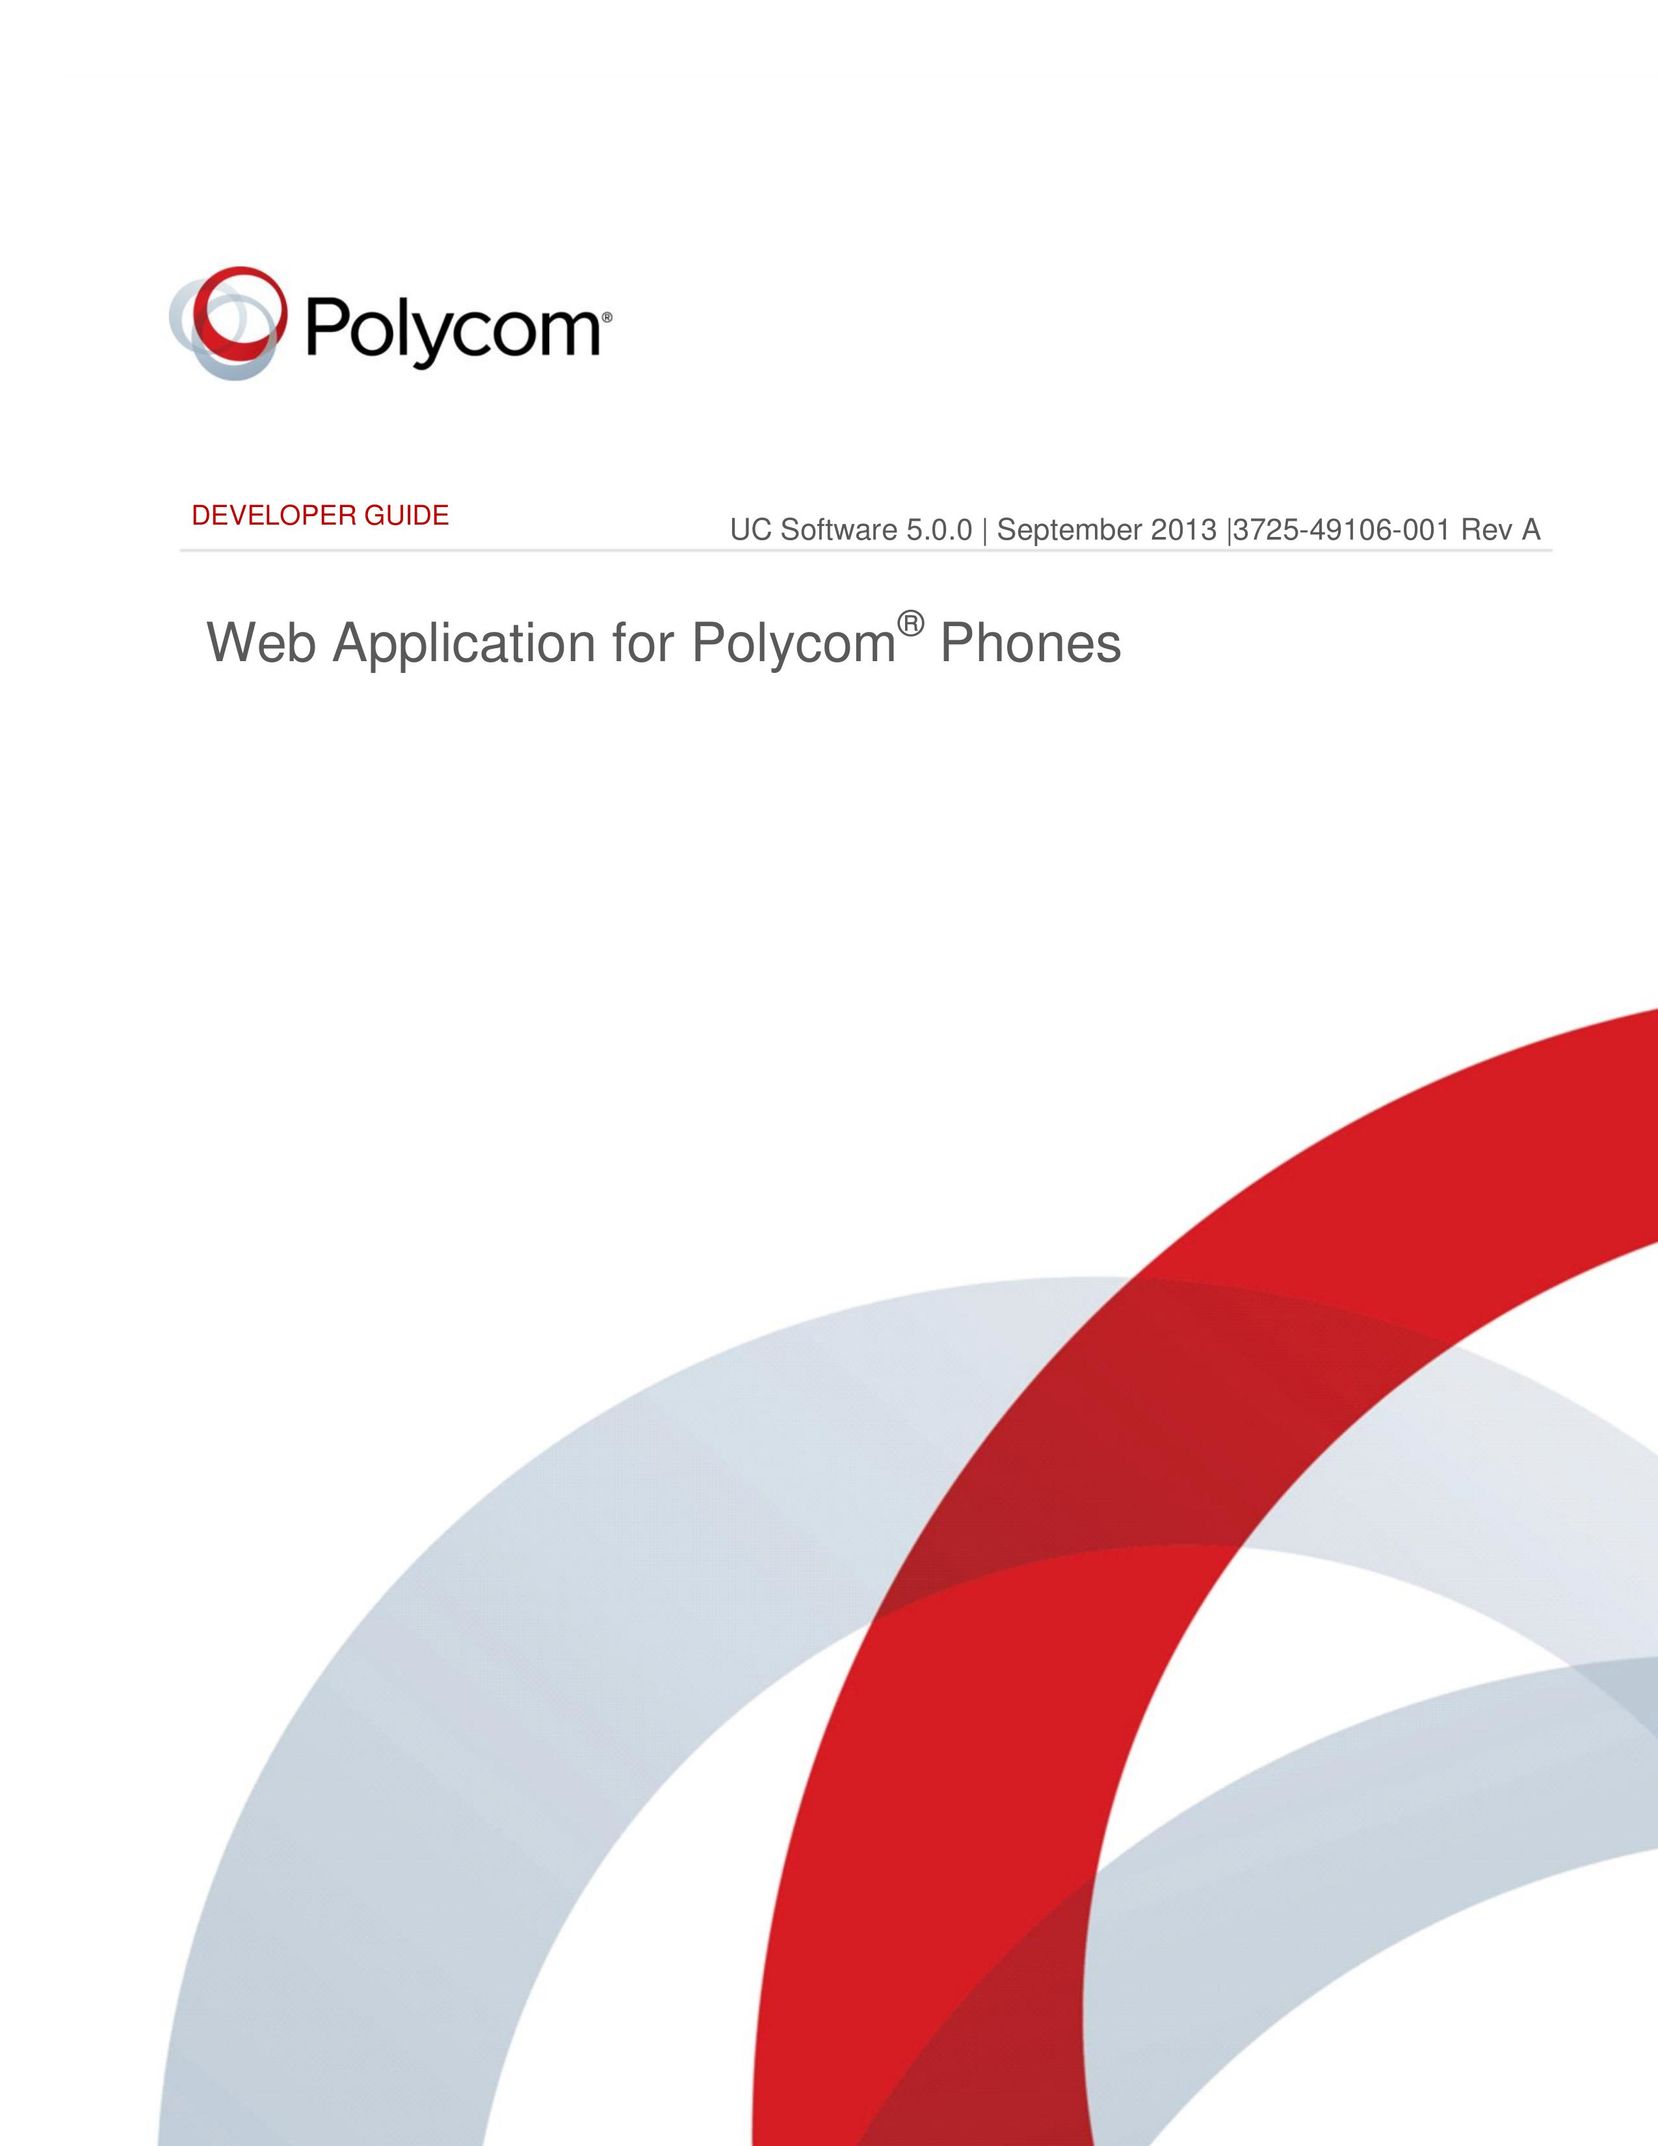 Polycom 3725-49106-001 Rev A Cell Phone User Manual